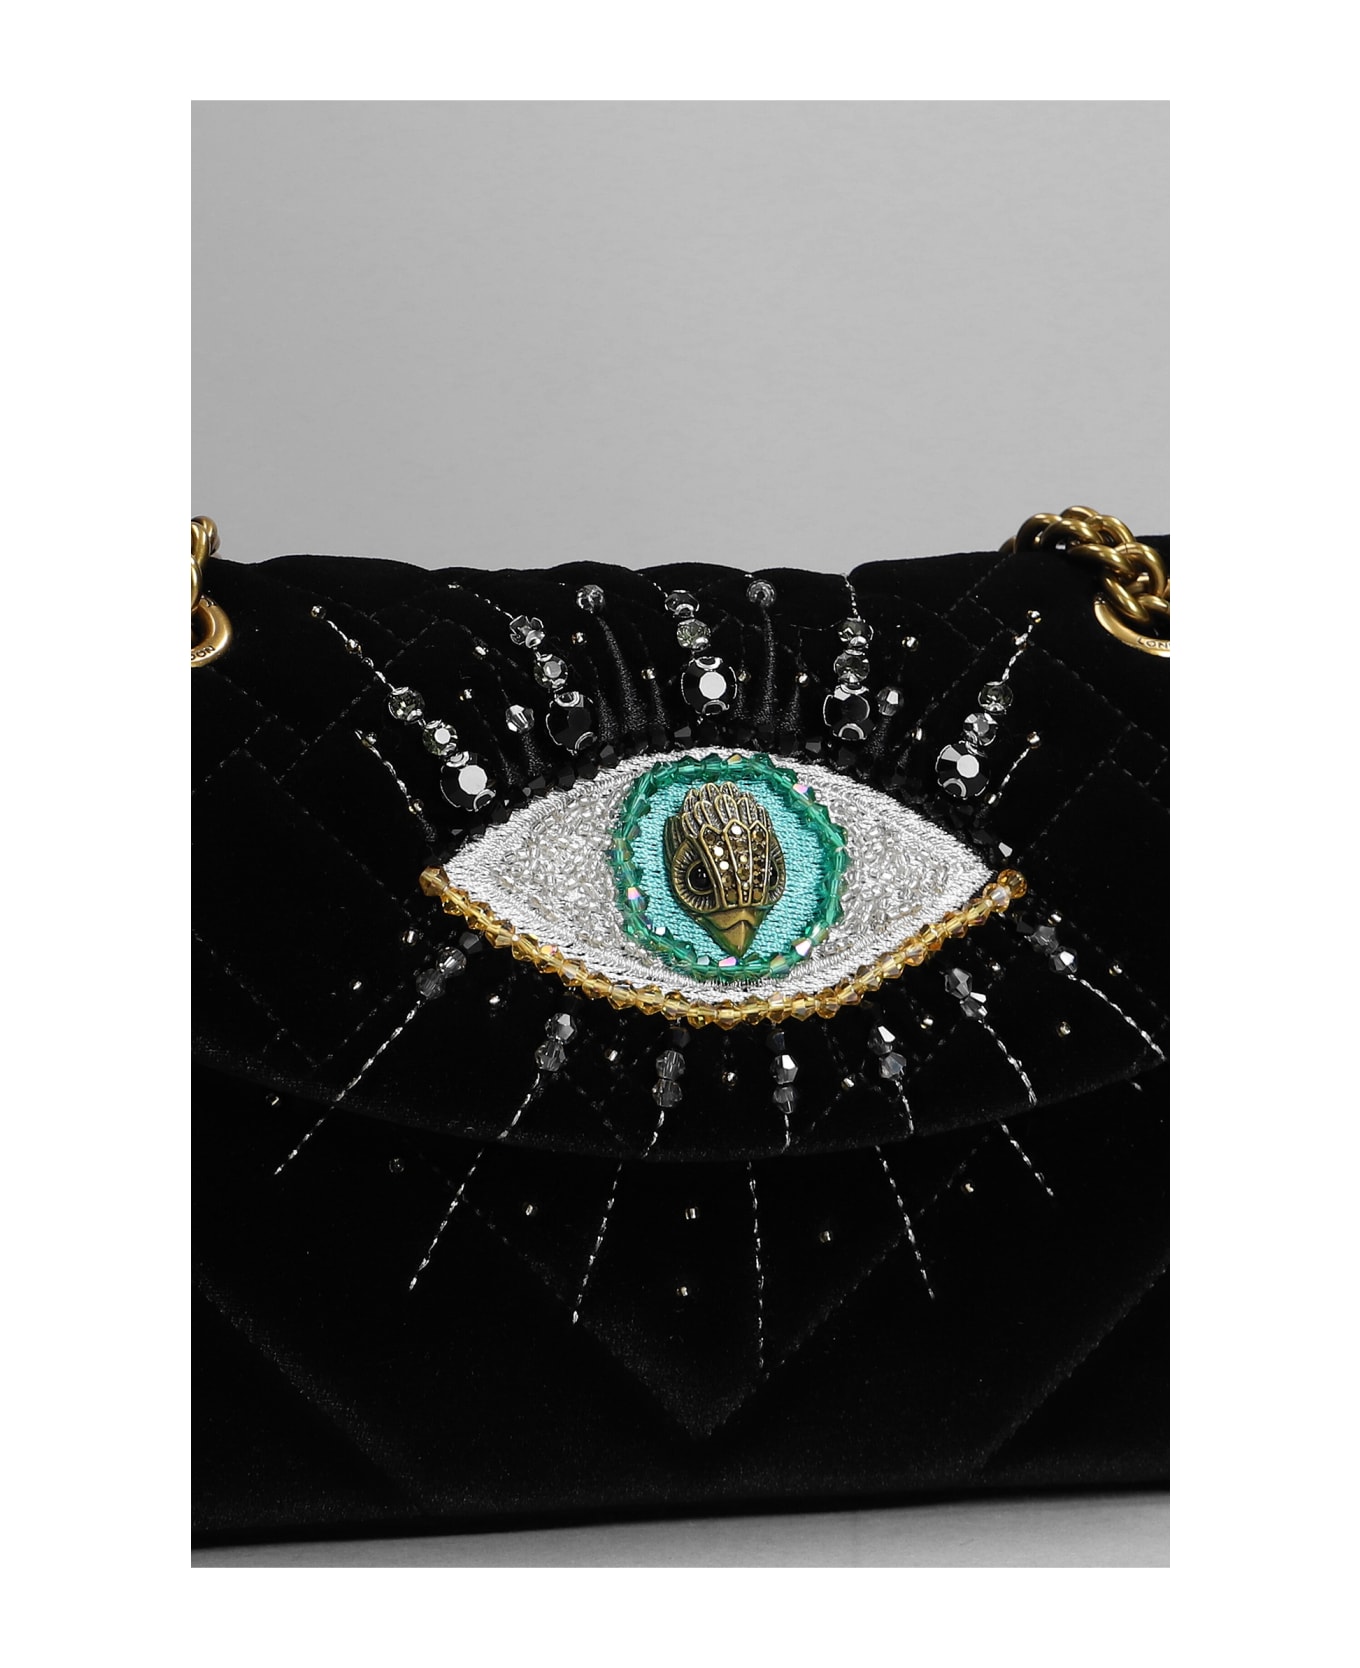 Kurt Geiger Mini Kensington Eye Shoulder Bag In Black Velvet